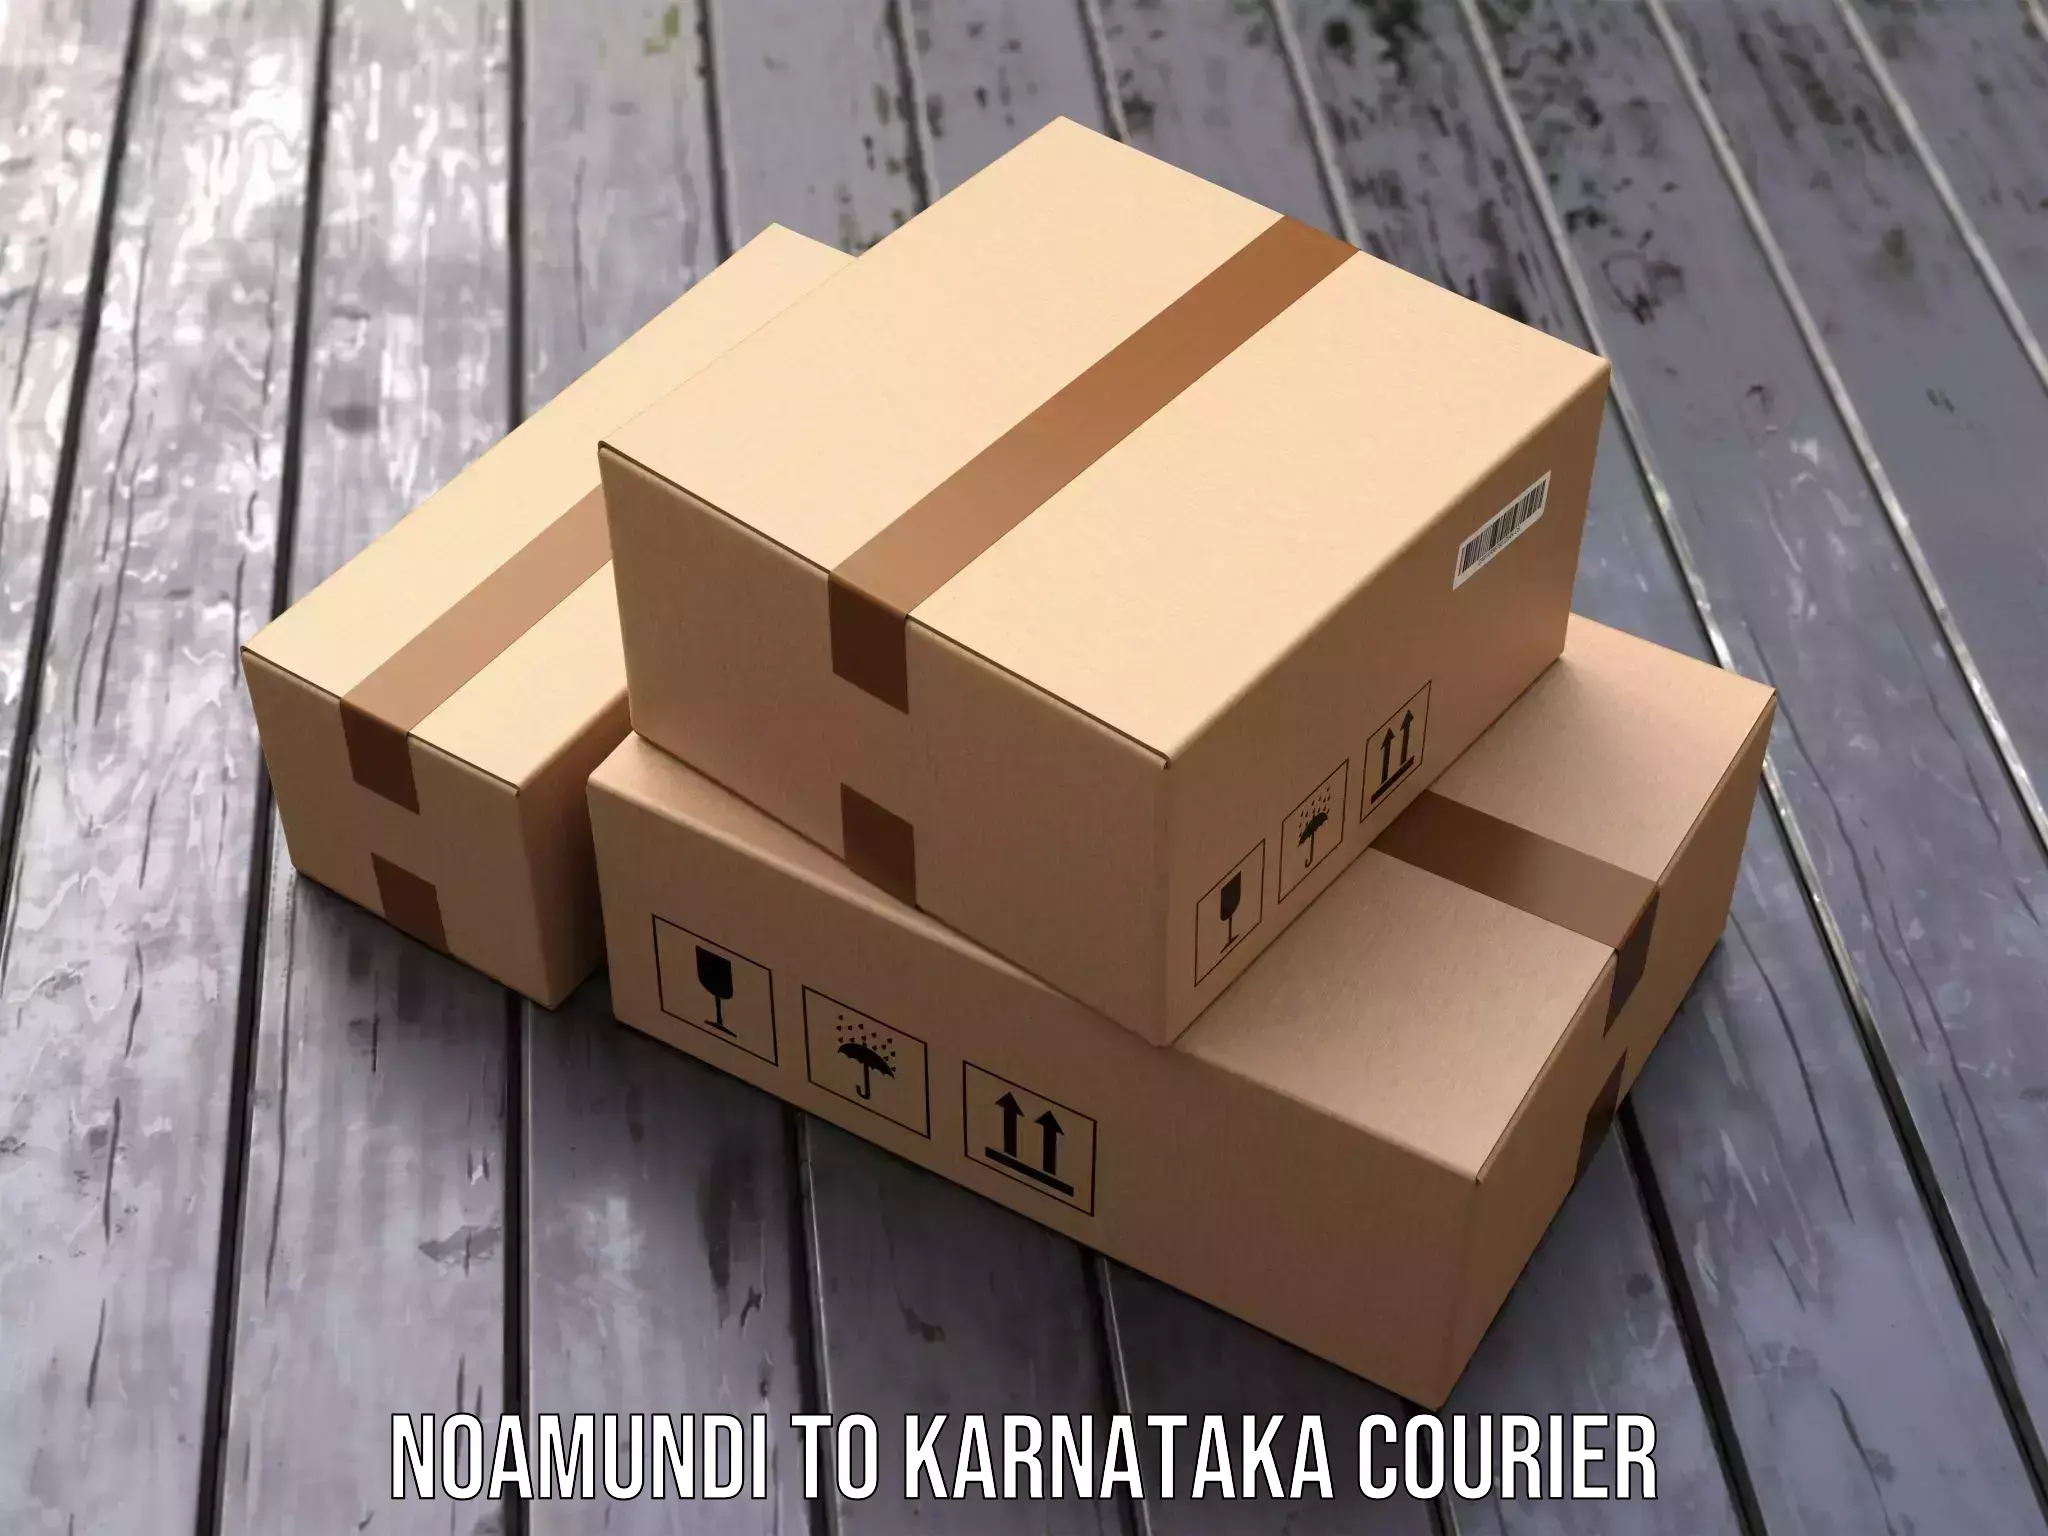 Courier service comparison Noamundi to Honnali